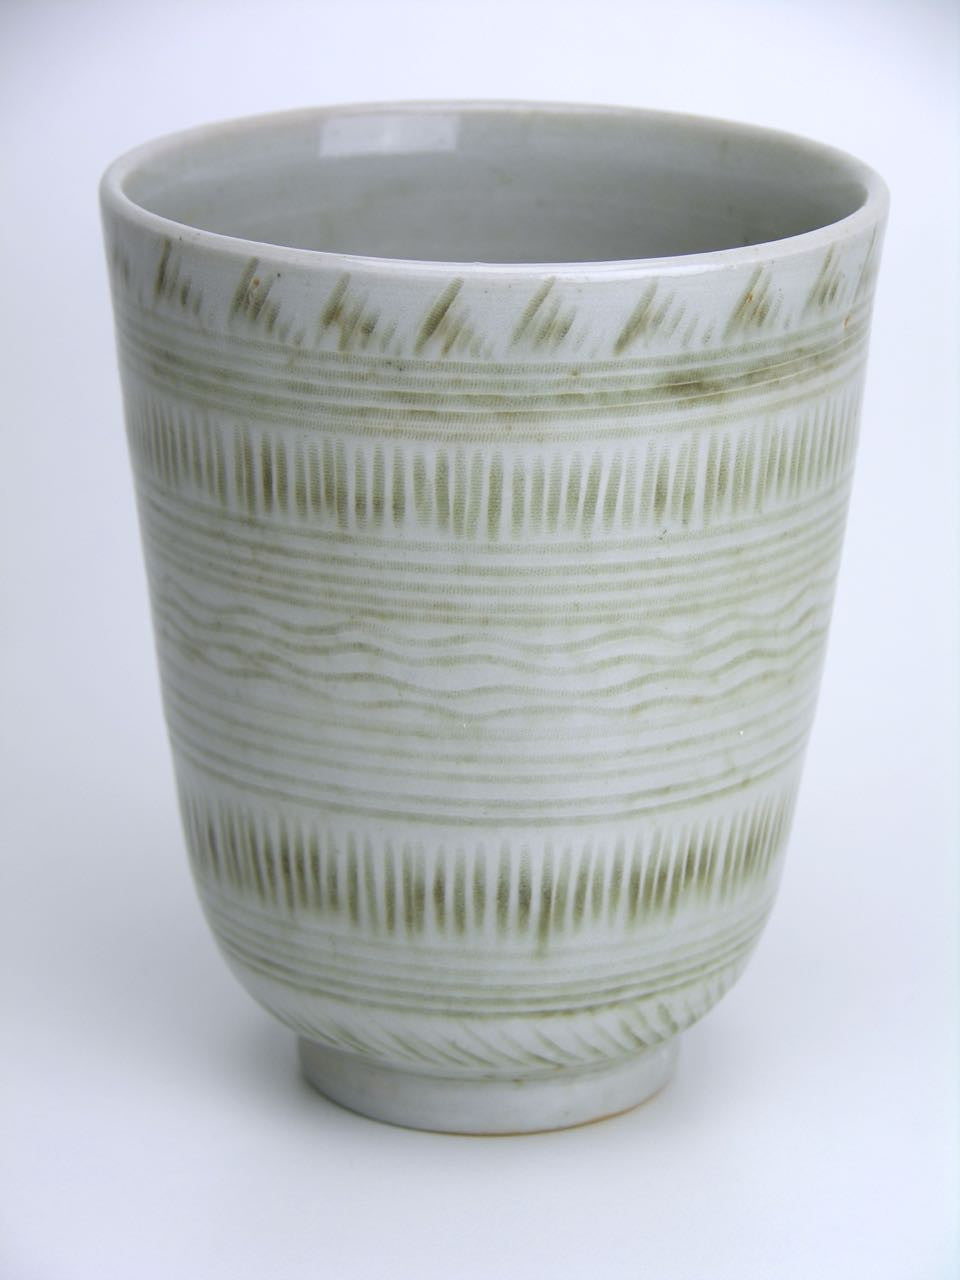 Hoganas grey glazed studio pottery vase